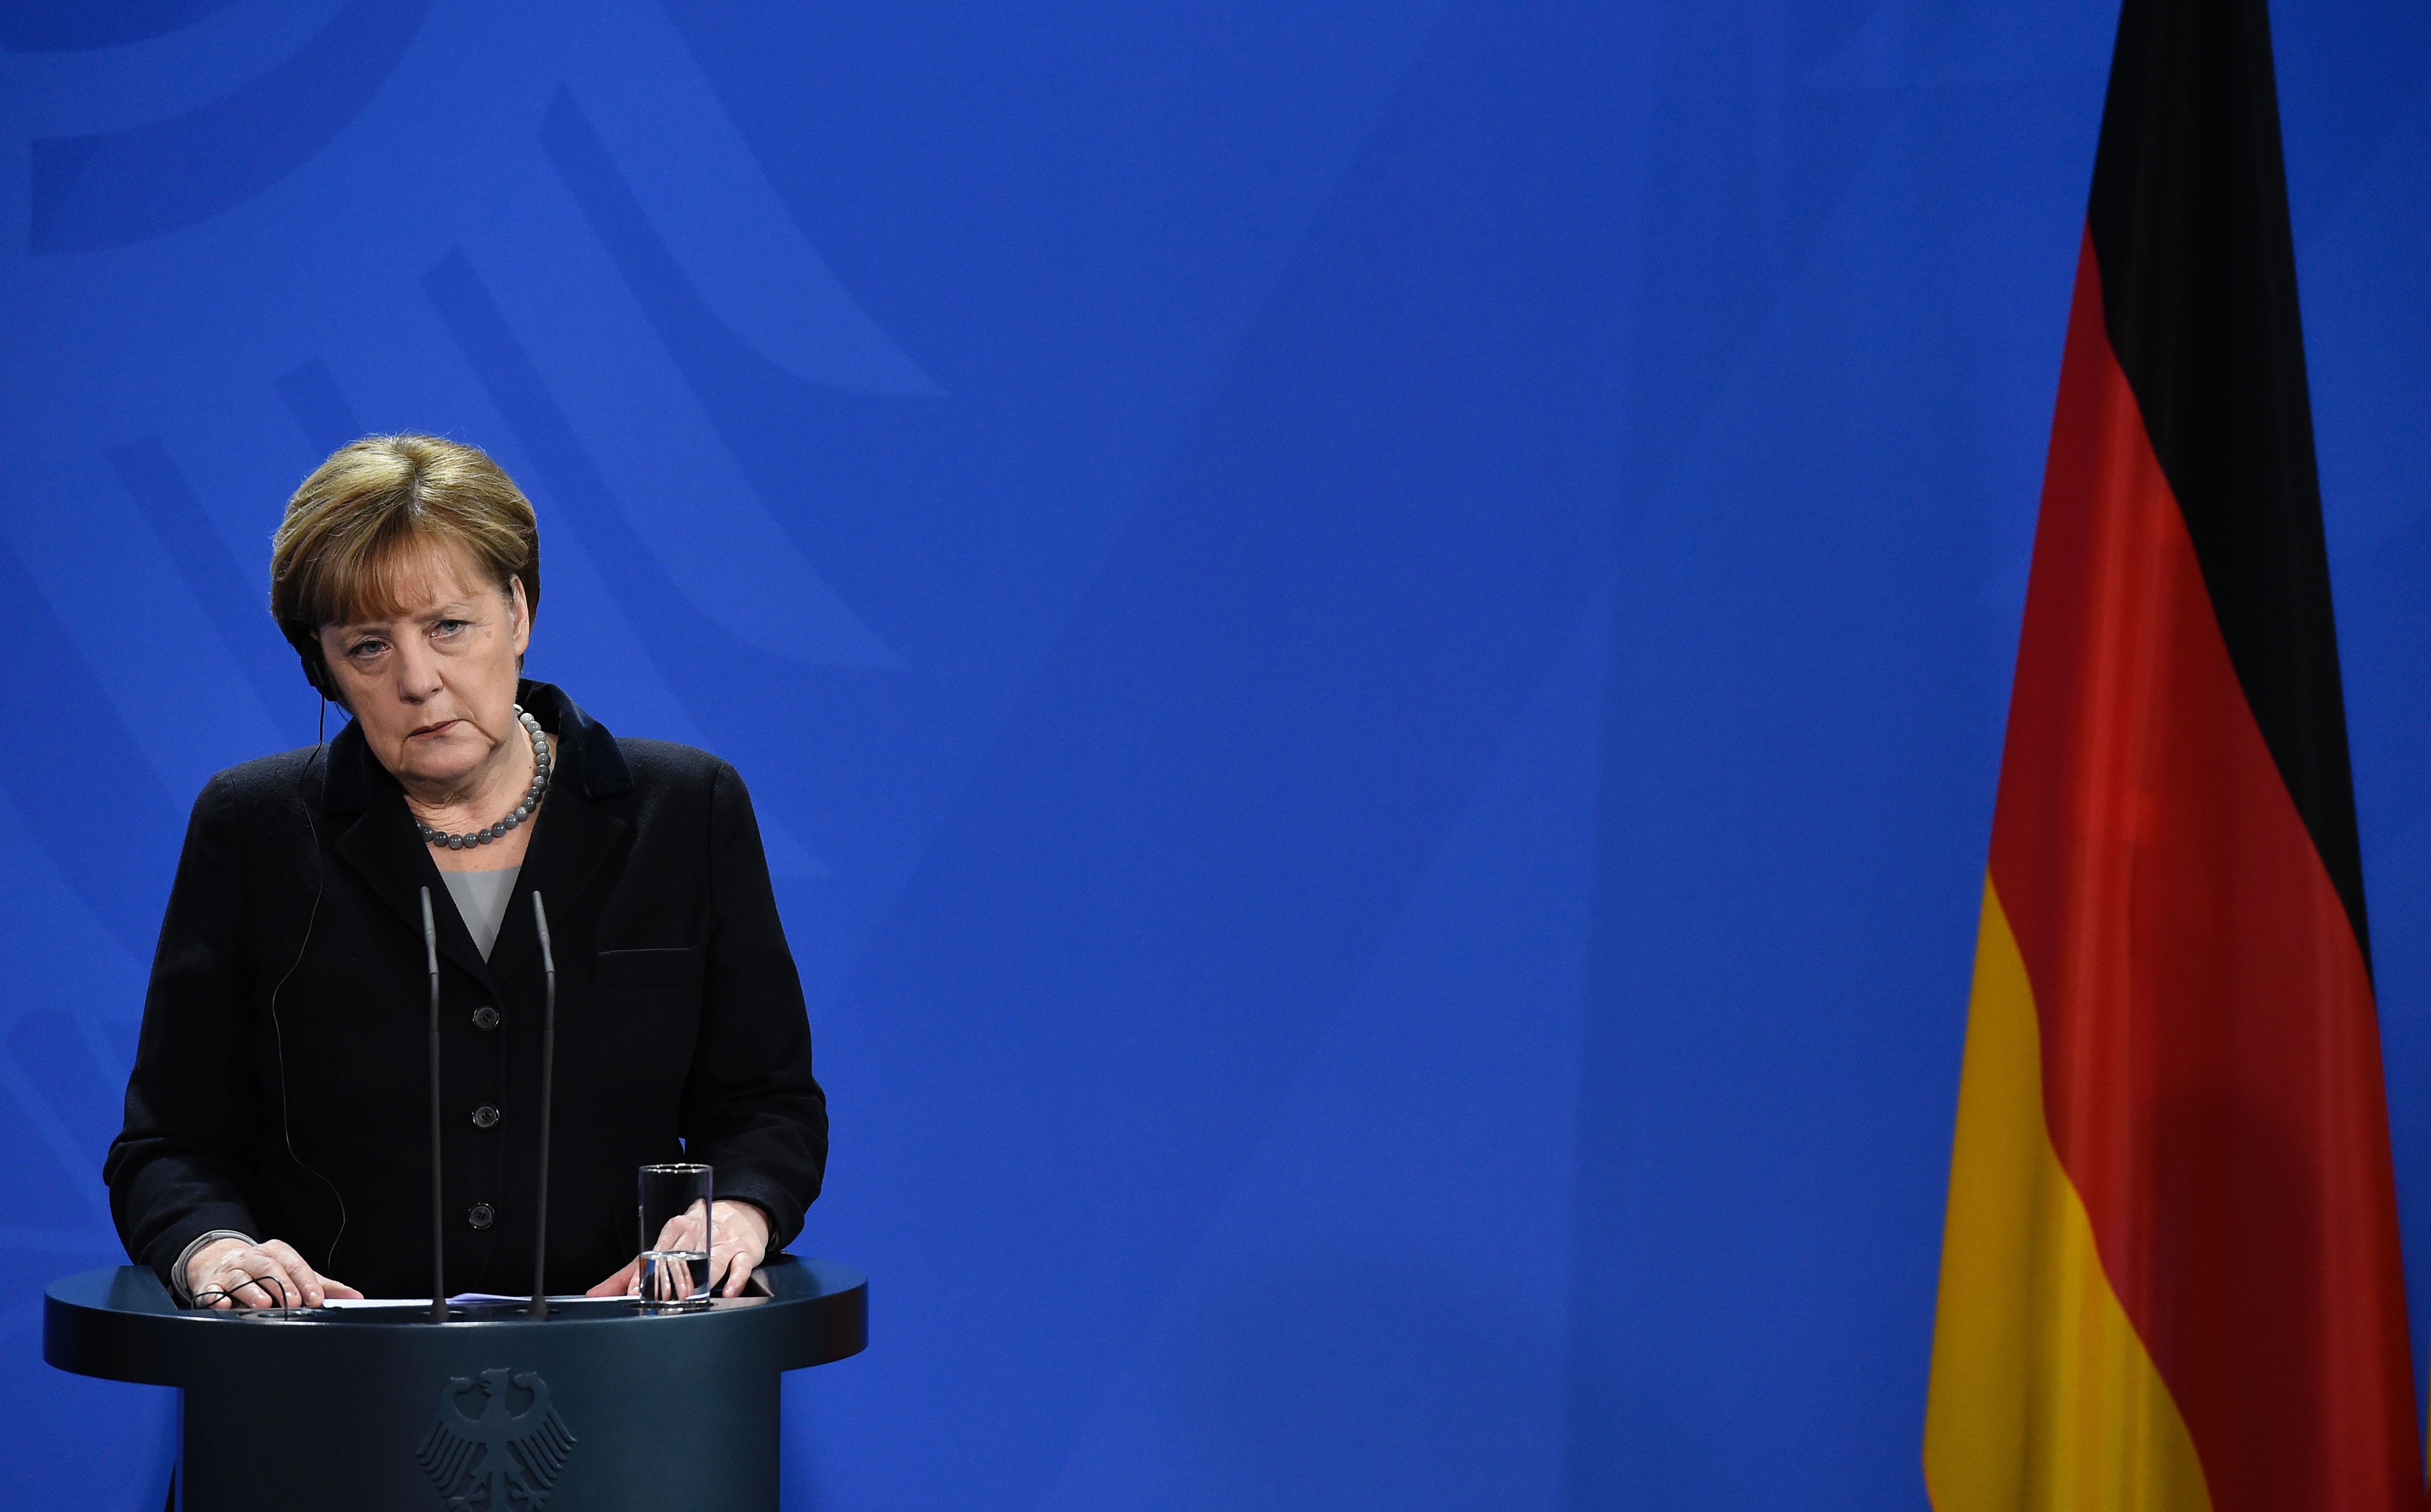 Silvester-Übergriffe und Asyldebatte: Bundeskanzlerin Angela Merkel in Bedrängnis, so sehen es ausländische Medien